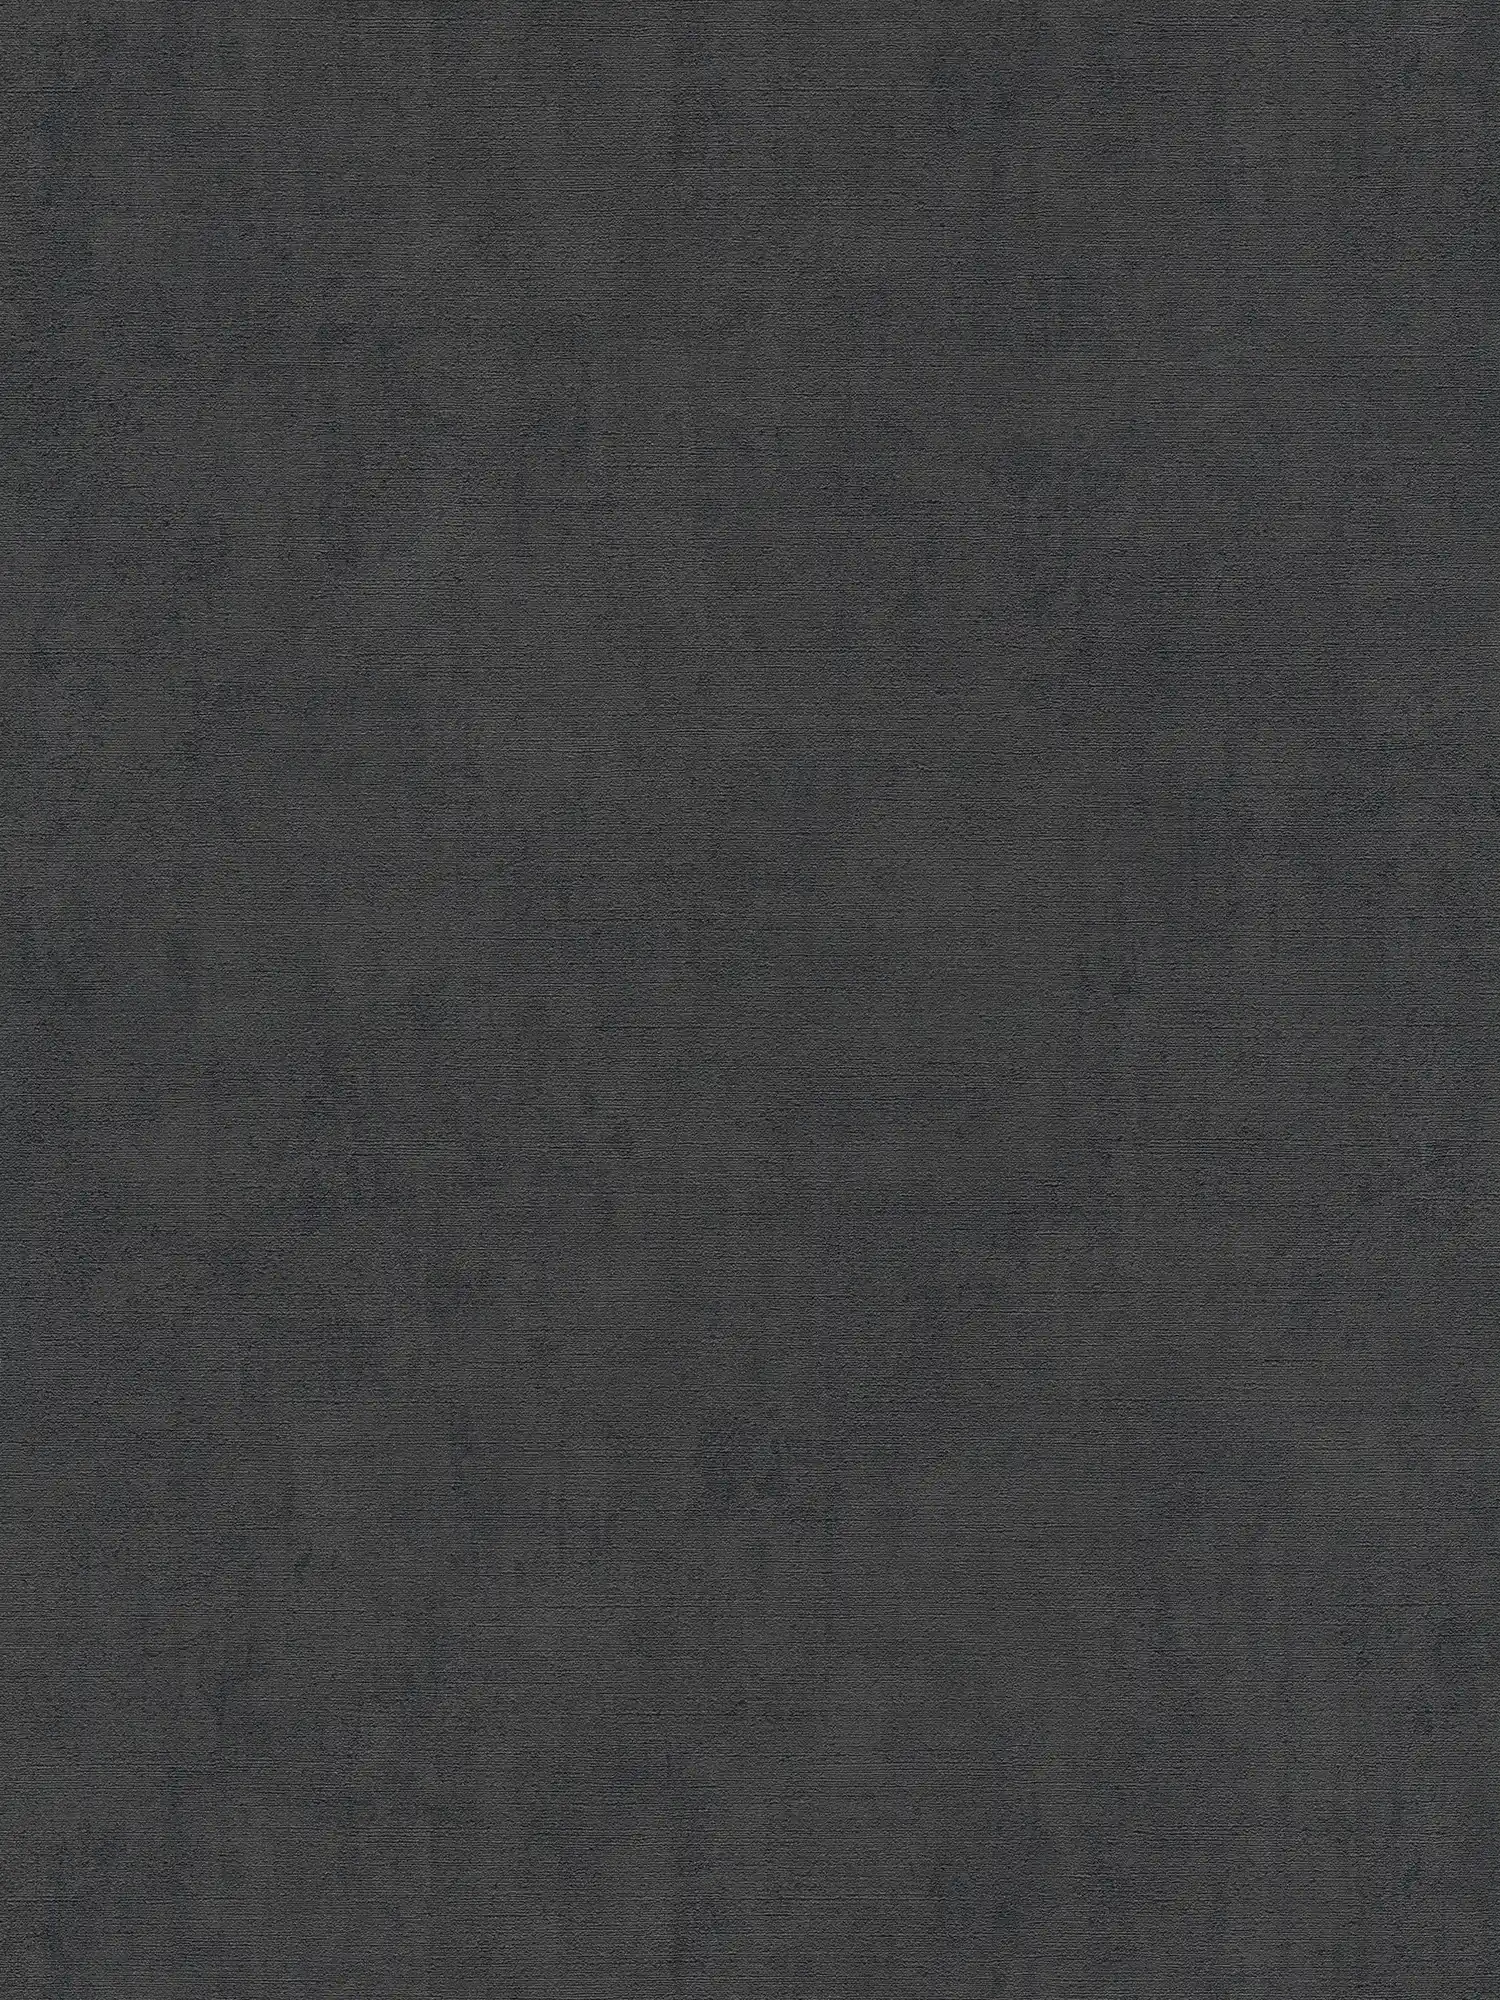 Black wallpaper plain mottled with embossed texture
